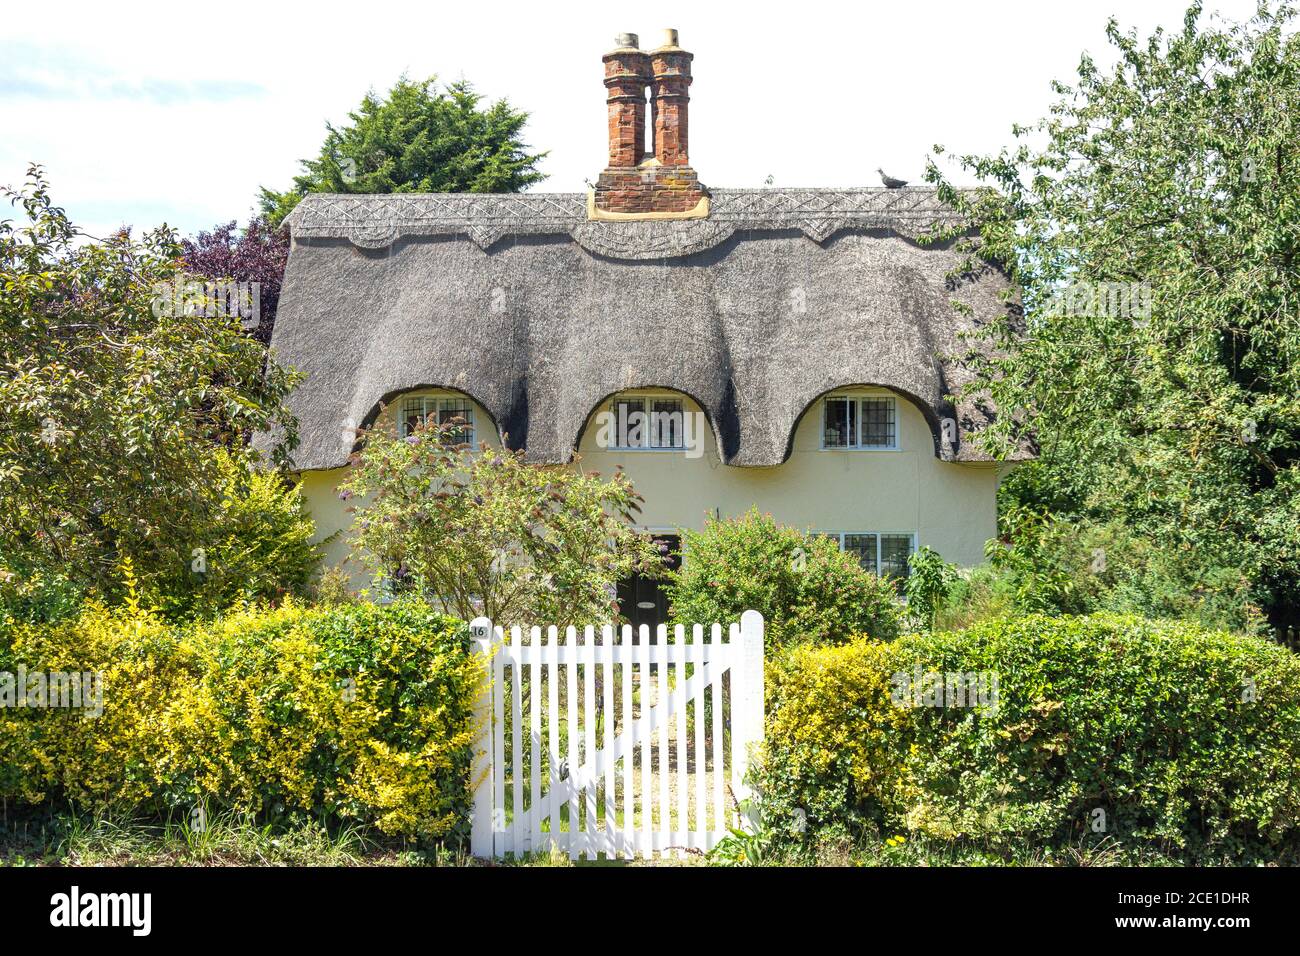 Chalet et jardin de chaume, The Village, Old Warden, Bedfordshire, Angleterre, Royaume-Uni Banque D'Images